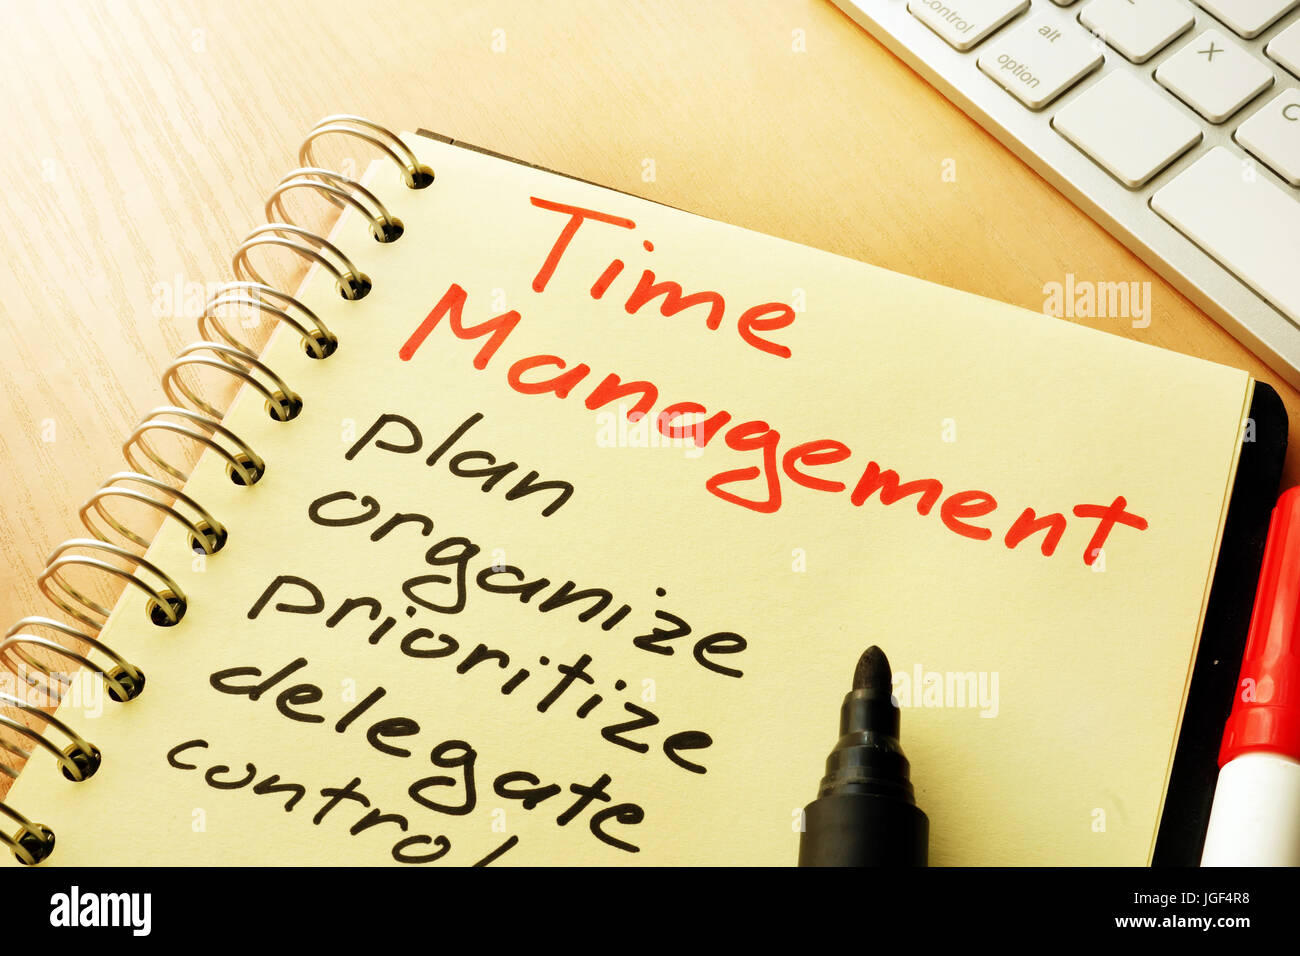 Zeit Management Titel und Liste von planen, organisieren, priorisieren. Stockfoto